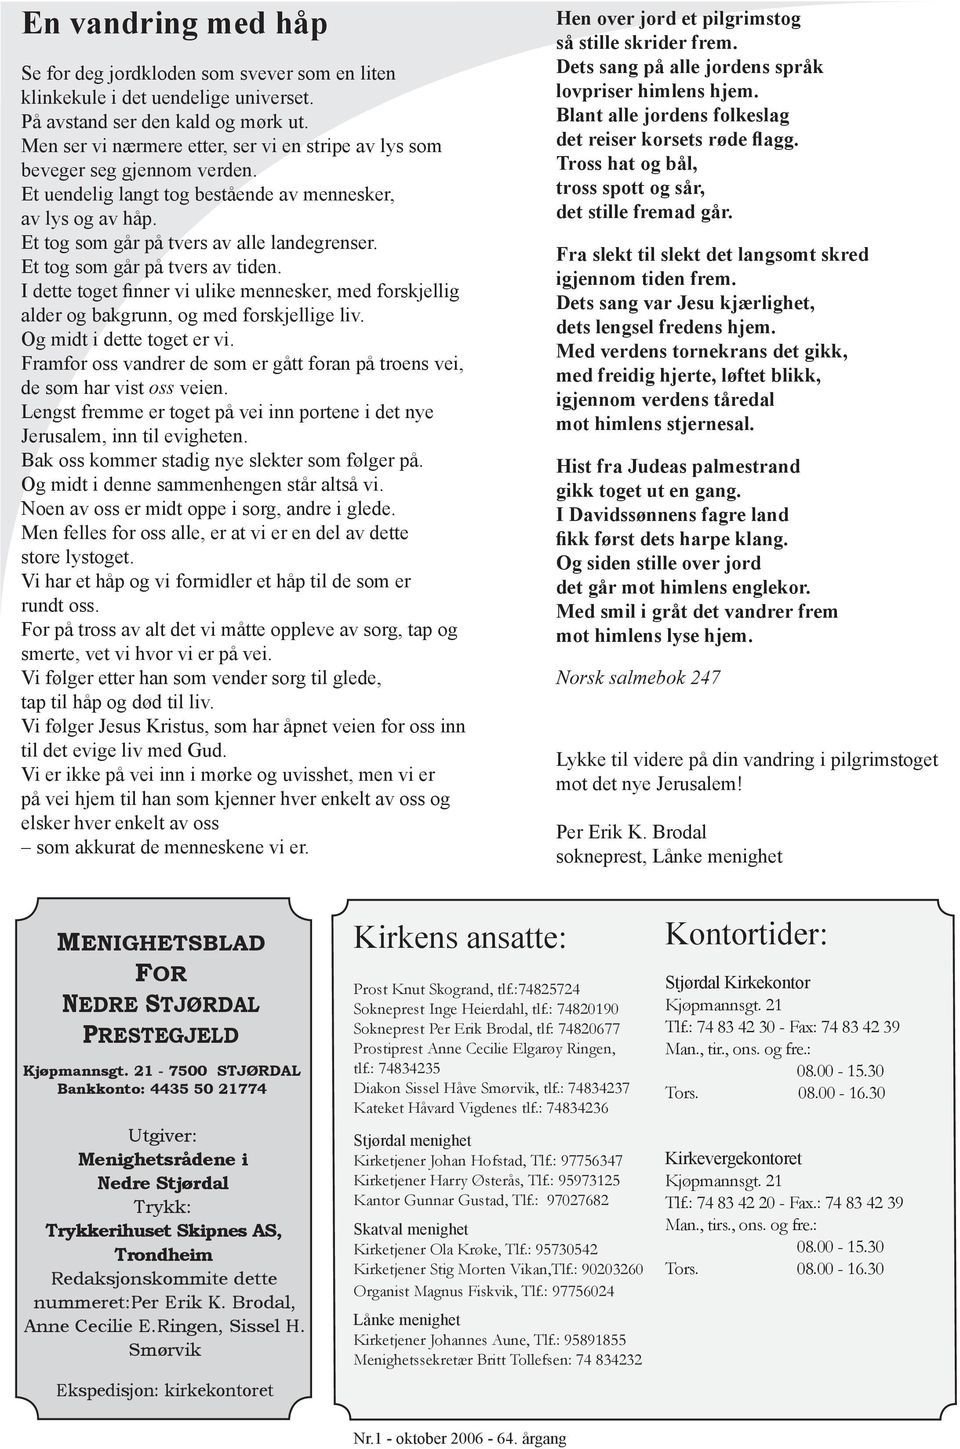 Allehelgen. For Nedre Stjørdal Prestegjeld. En sang om håp. Utgitt av  menighetsrådene i Stjørdal, Skatval og Lånke Nr - PDF Gratis nedlasting